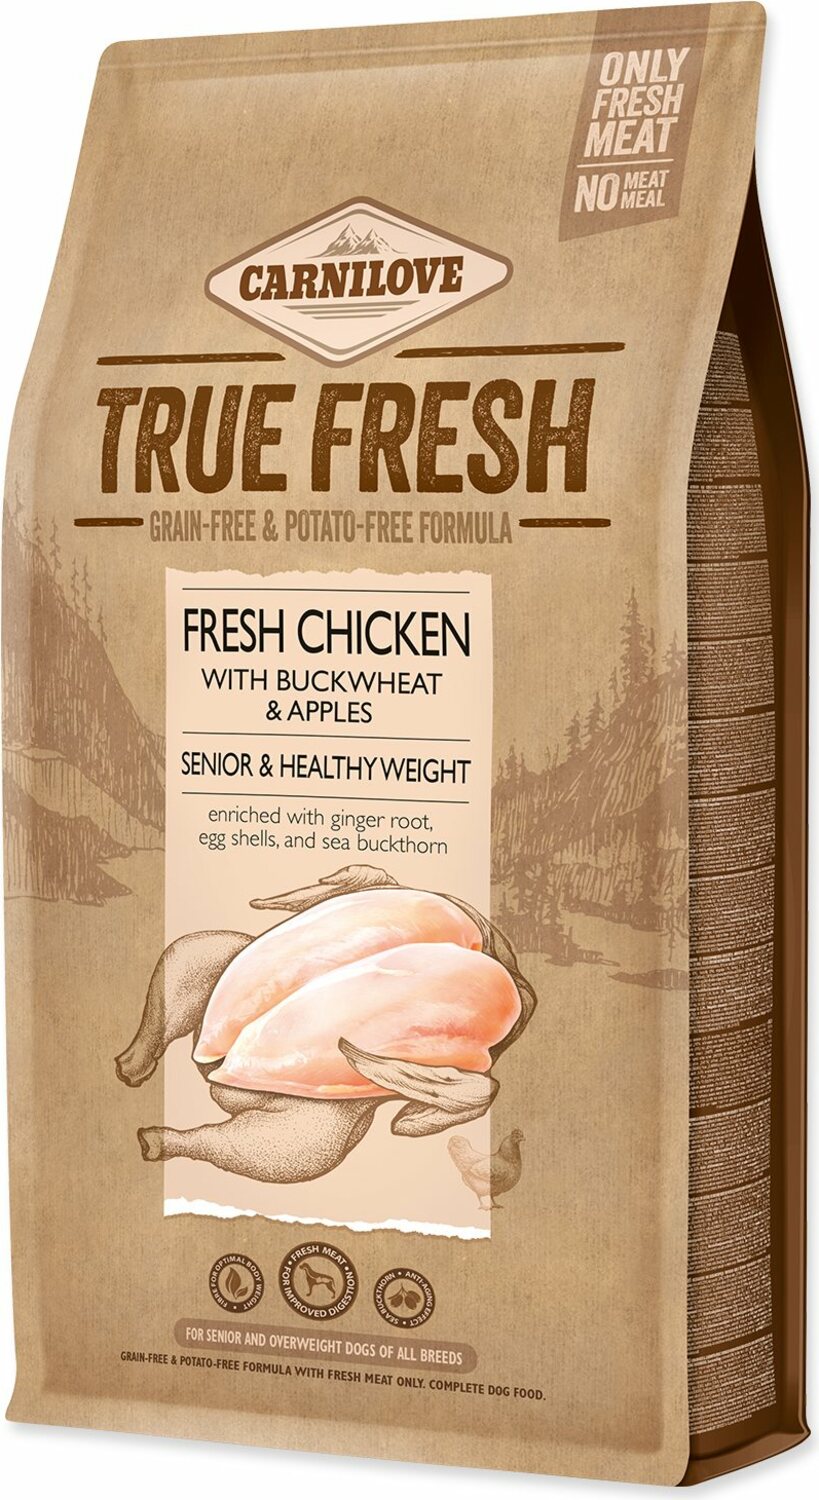 Krmivo Carnilove True Fresh senior Healthy Weight Chicken 4kg